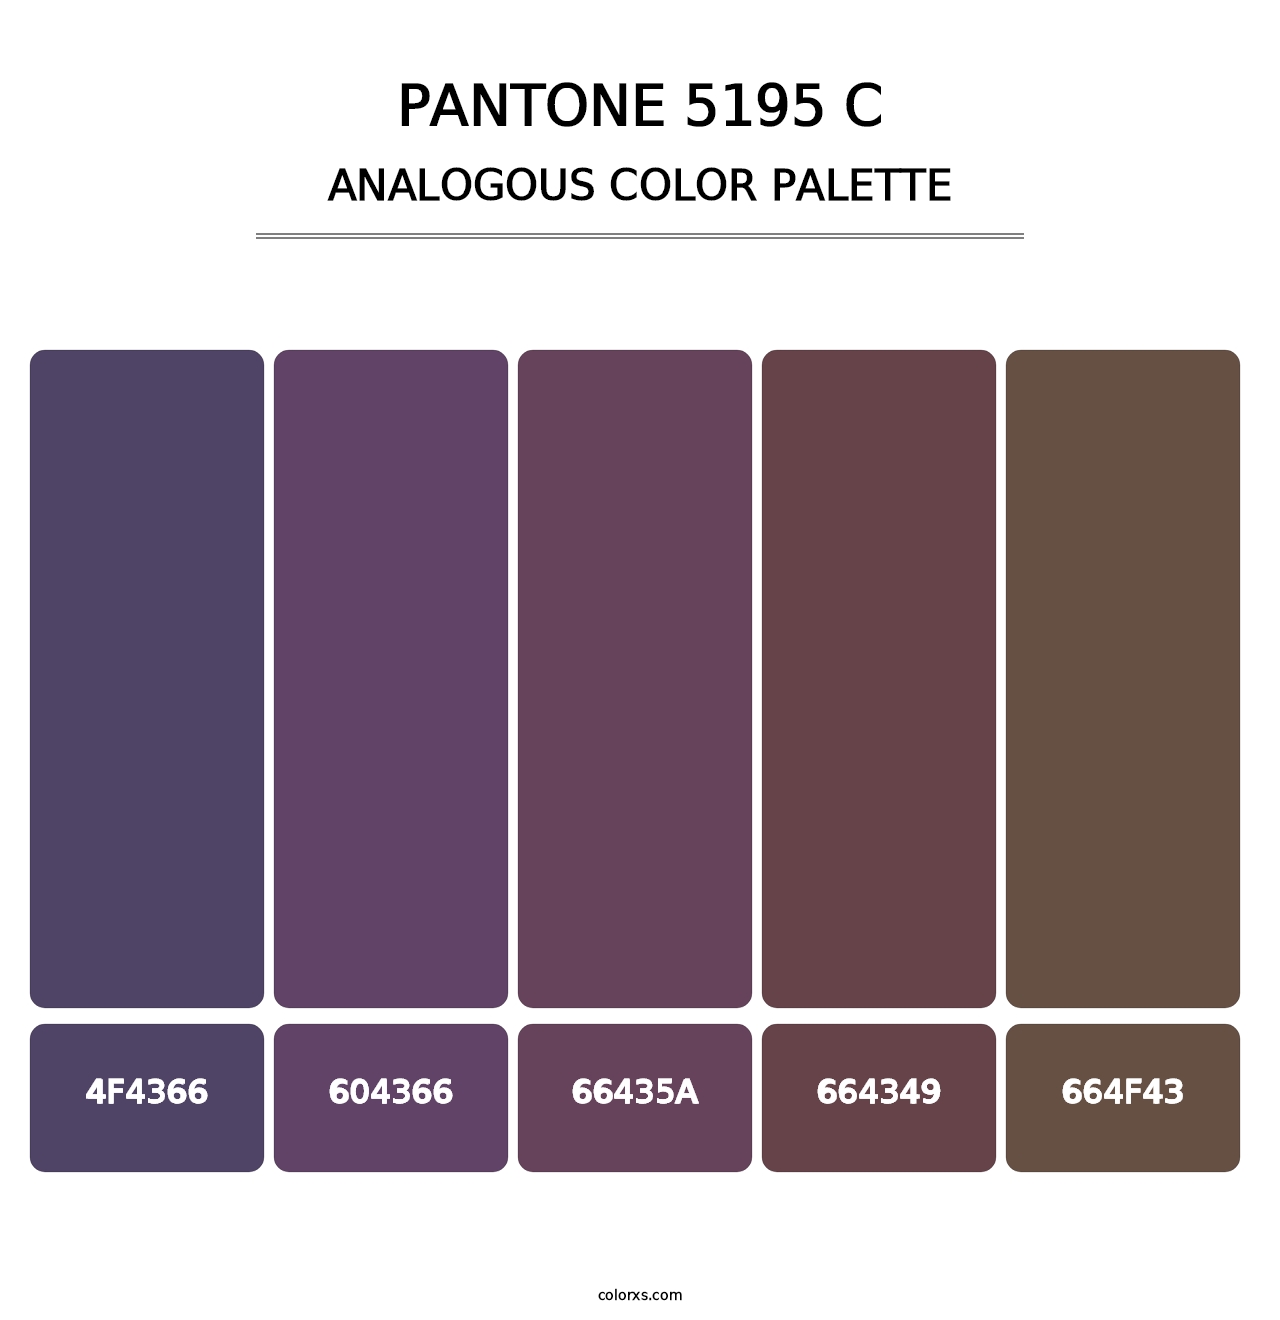 PANTONE 5195 C - Analogous Color Palette